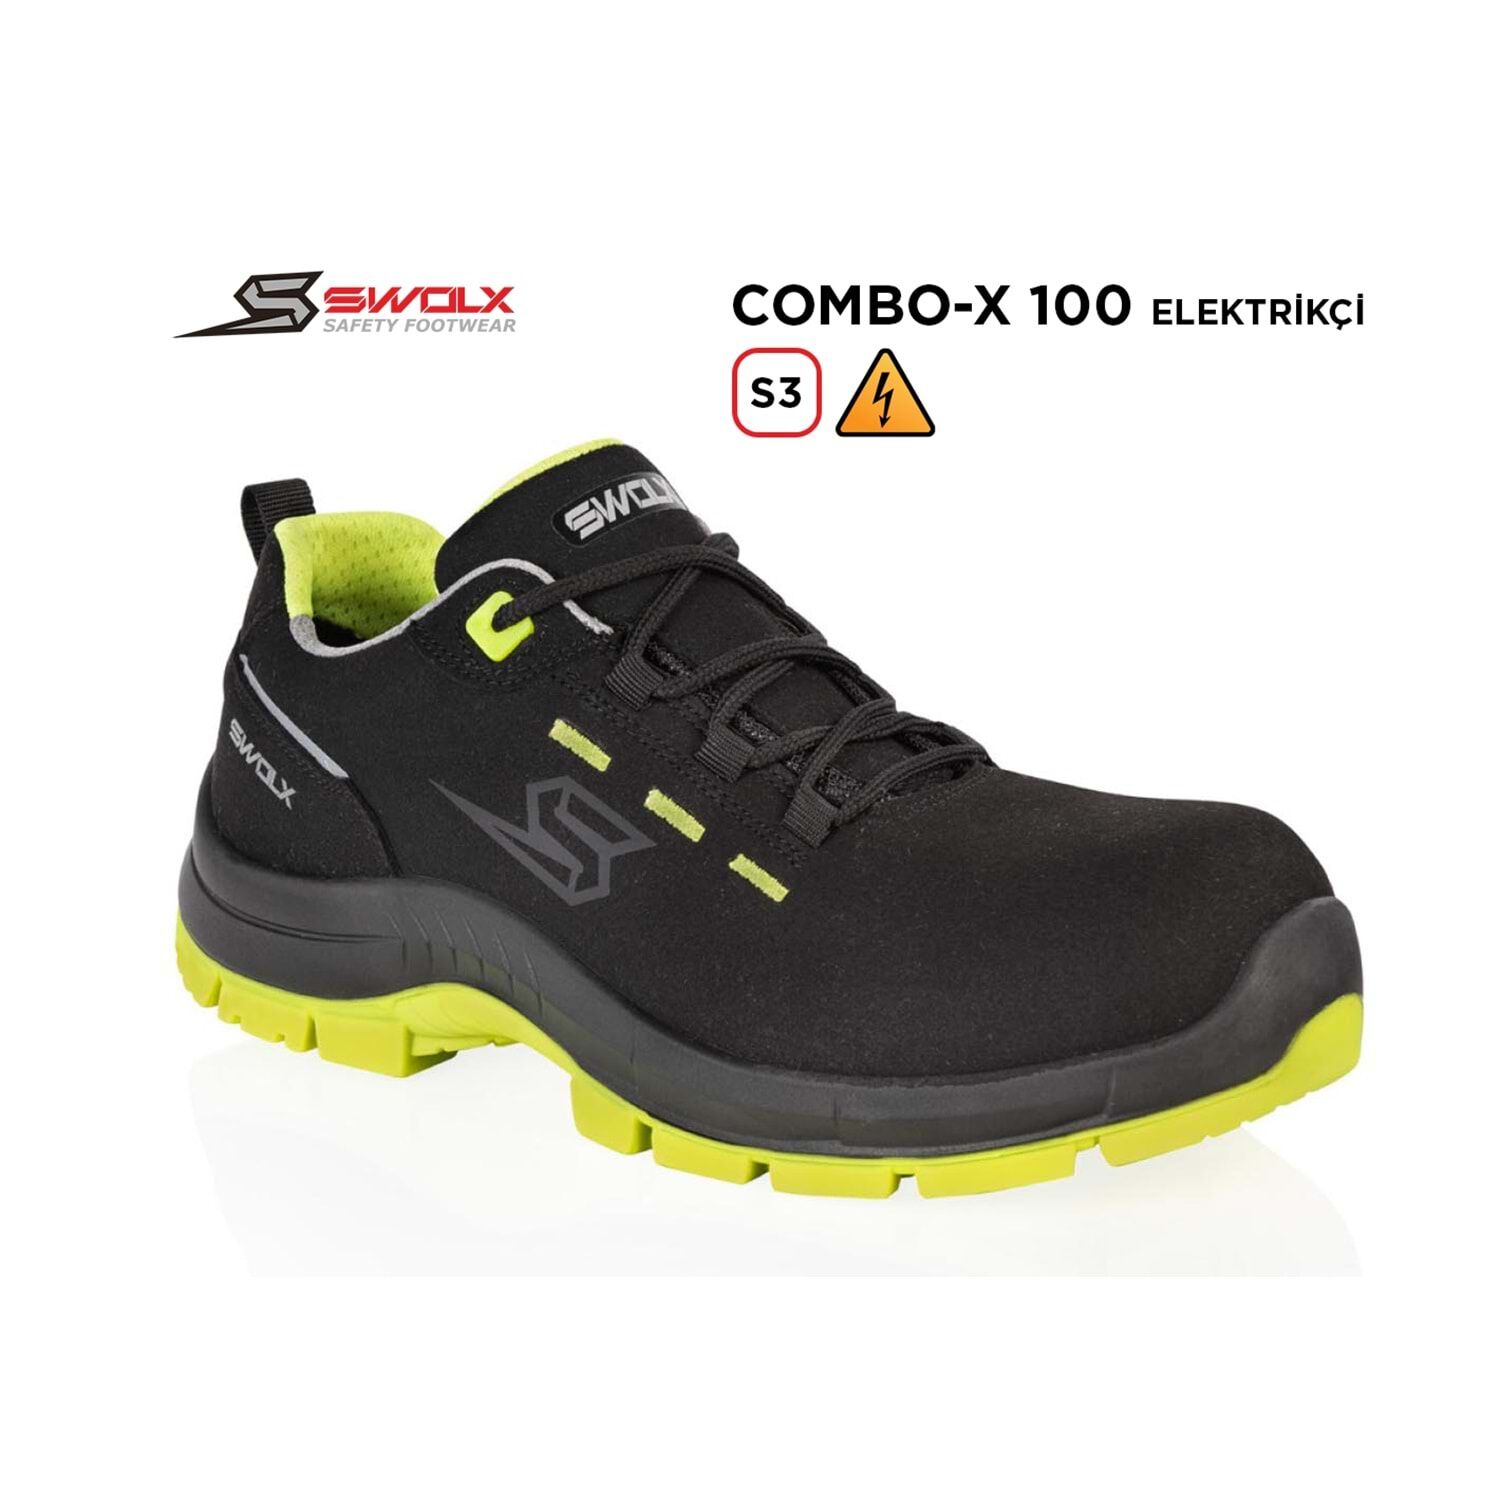 Swolx combo x100 S3 elektrikçi ayakkabısı